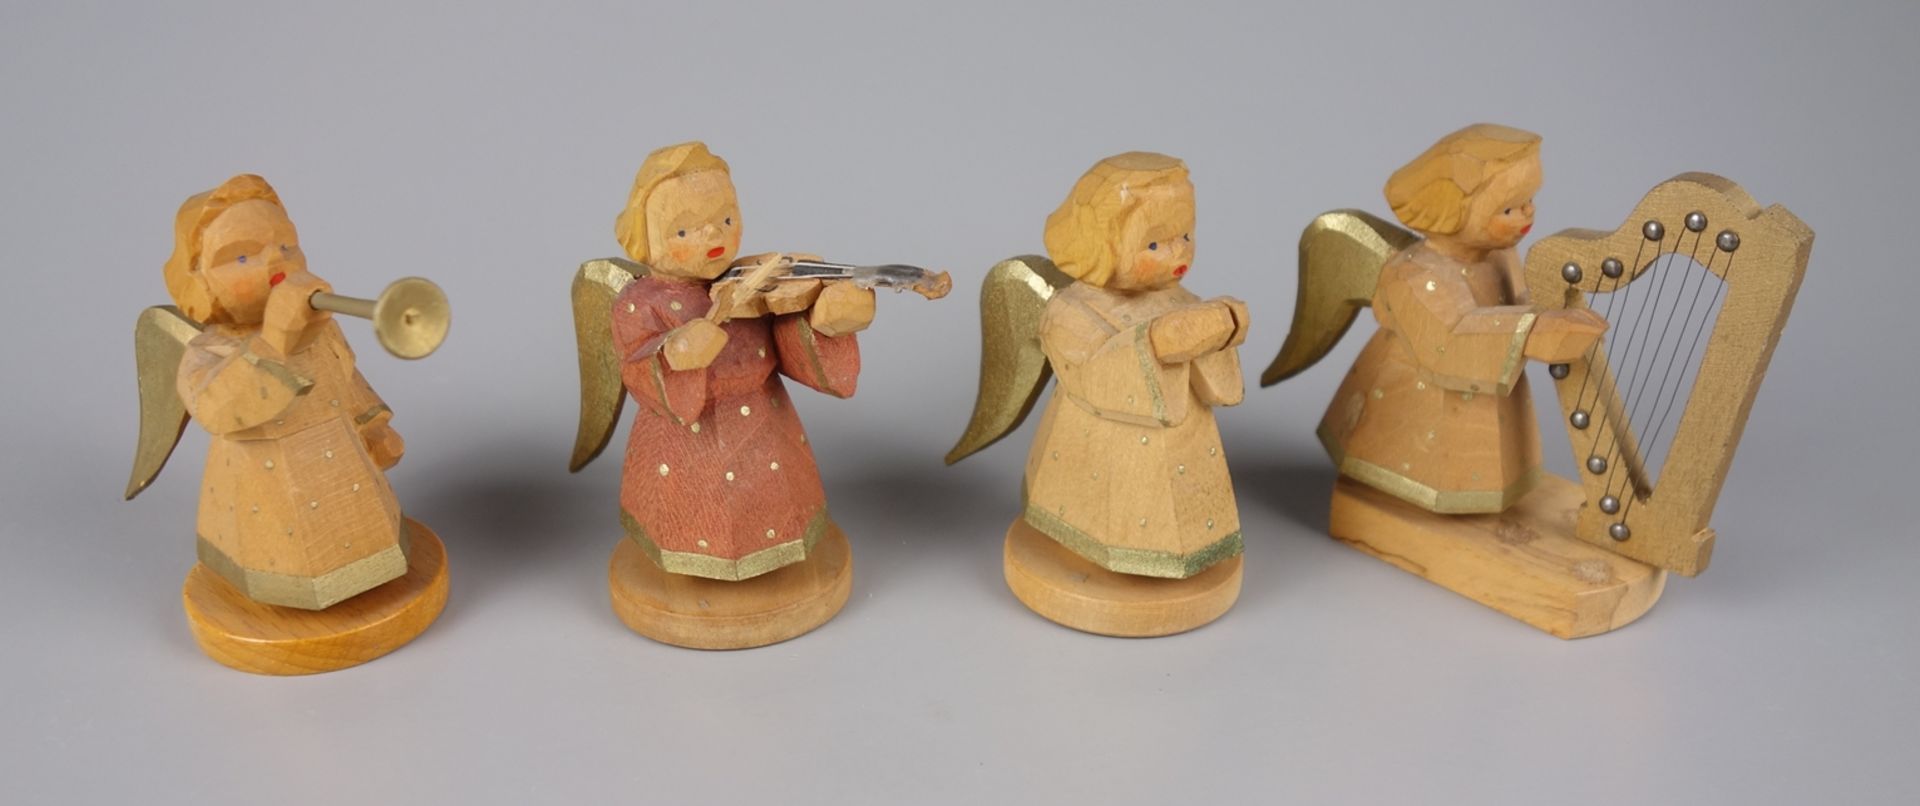 4 Engel aus Engelkapelle, Schumann & Wagner, Grünhainichen, Erzgebirge, 1.Hälfte 20.Jh.